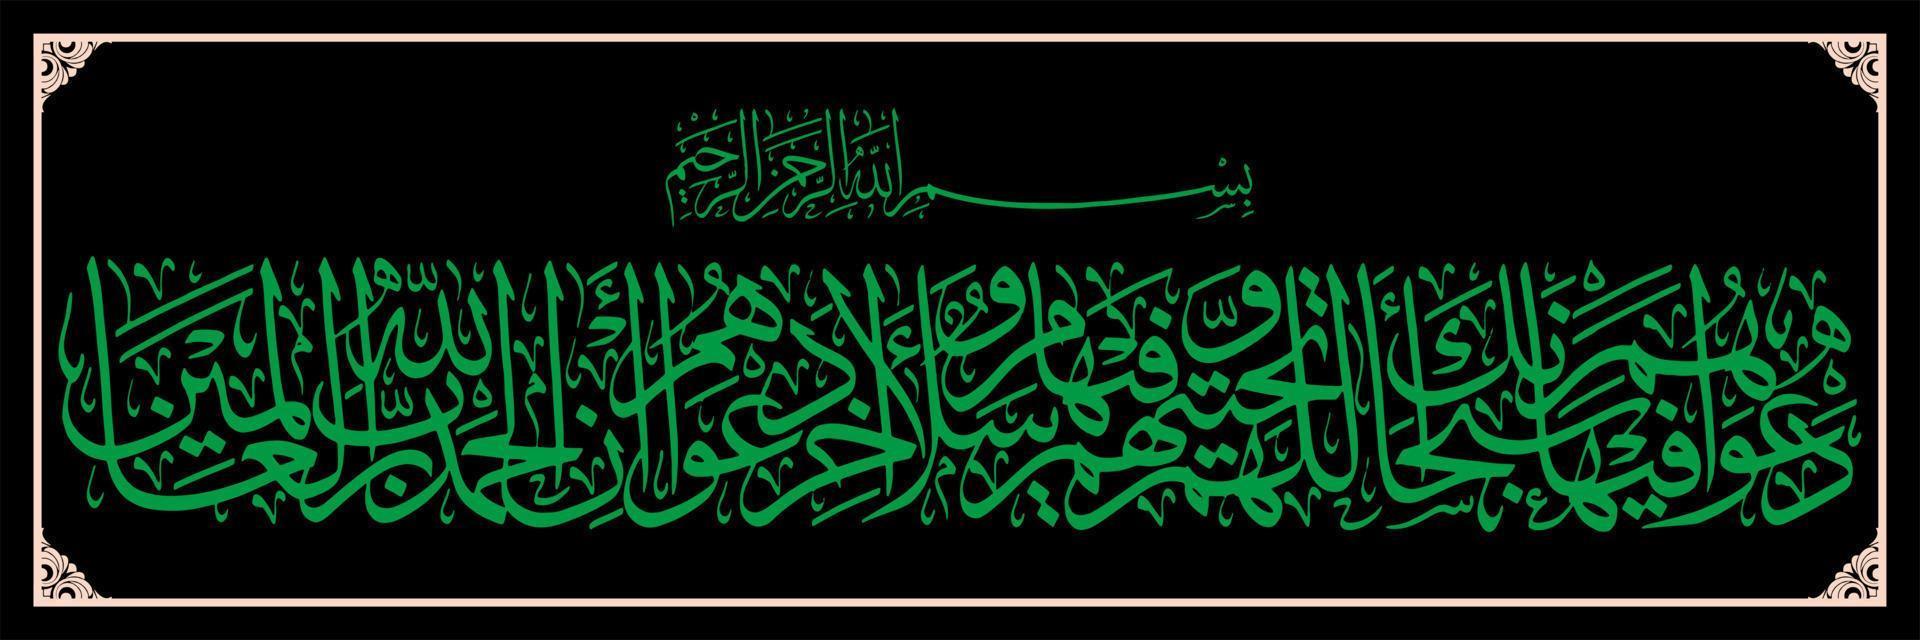 caligrafía árabe, corán sura en yunus verso 10, traducida su oración en ella es, bendito seas, oh nuestro señor, y su saludo es, la paz sea contigo. y el final de su oración es, vector